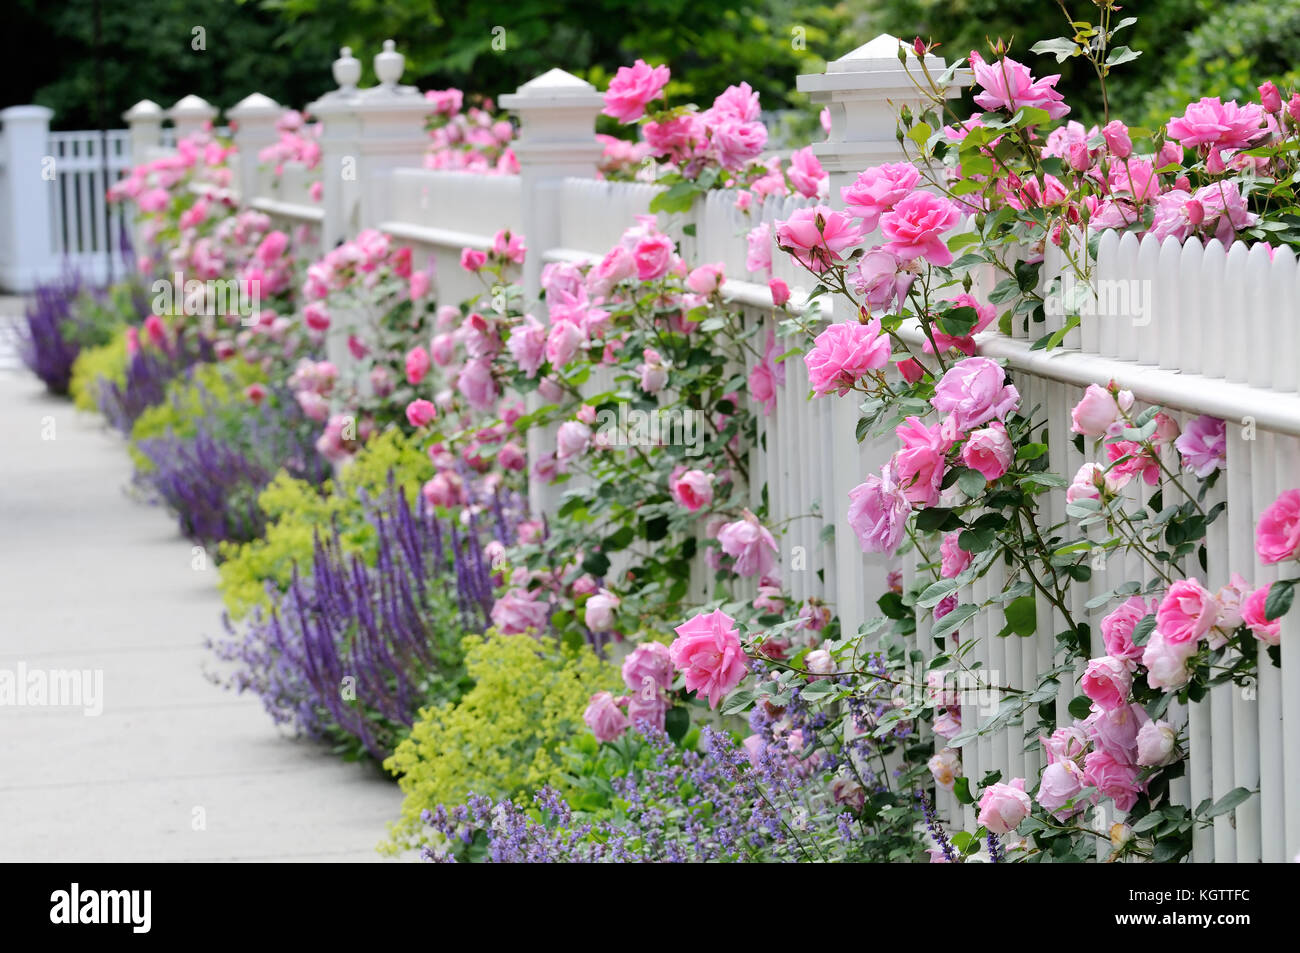 White Fence, rosa Rosen und bunten Garten Grenze mit Salbei, Katzenminze und Frauenmantel. Stockfoto